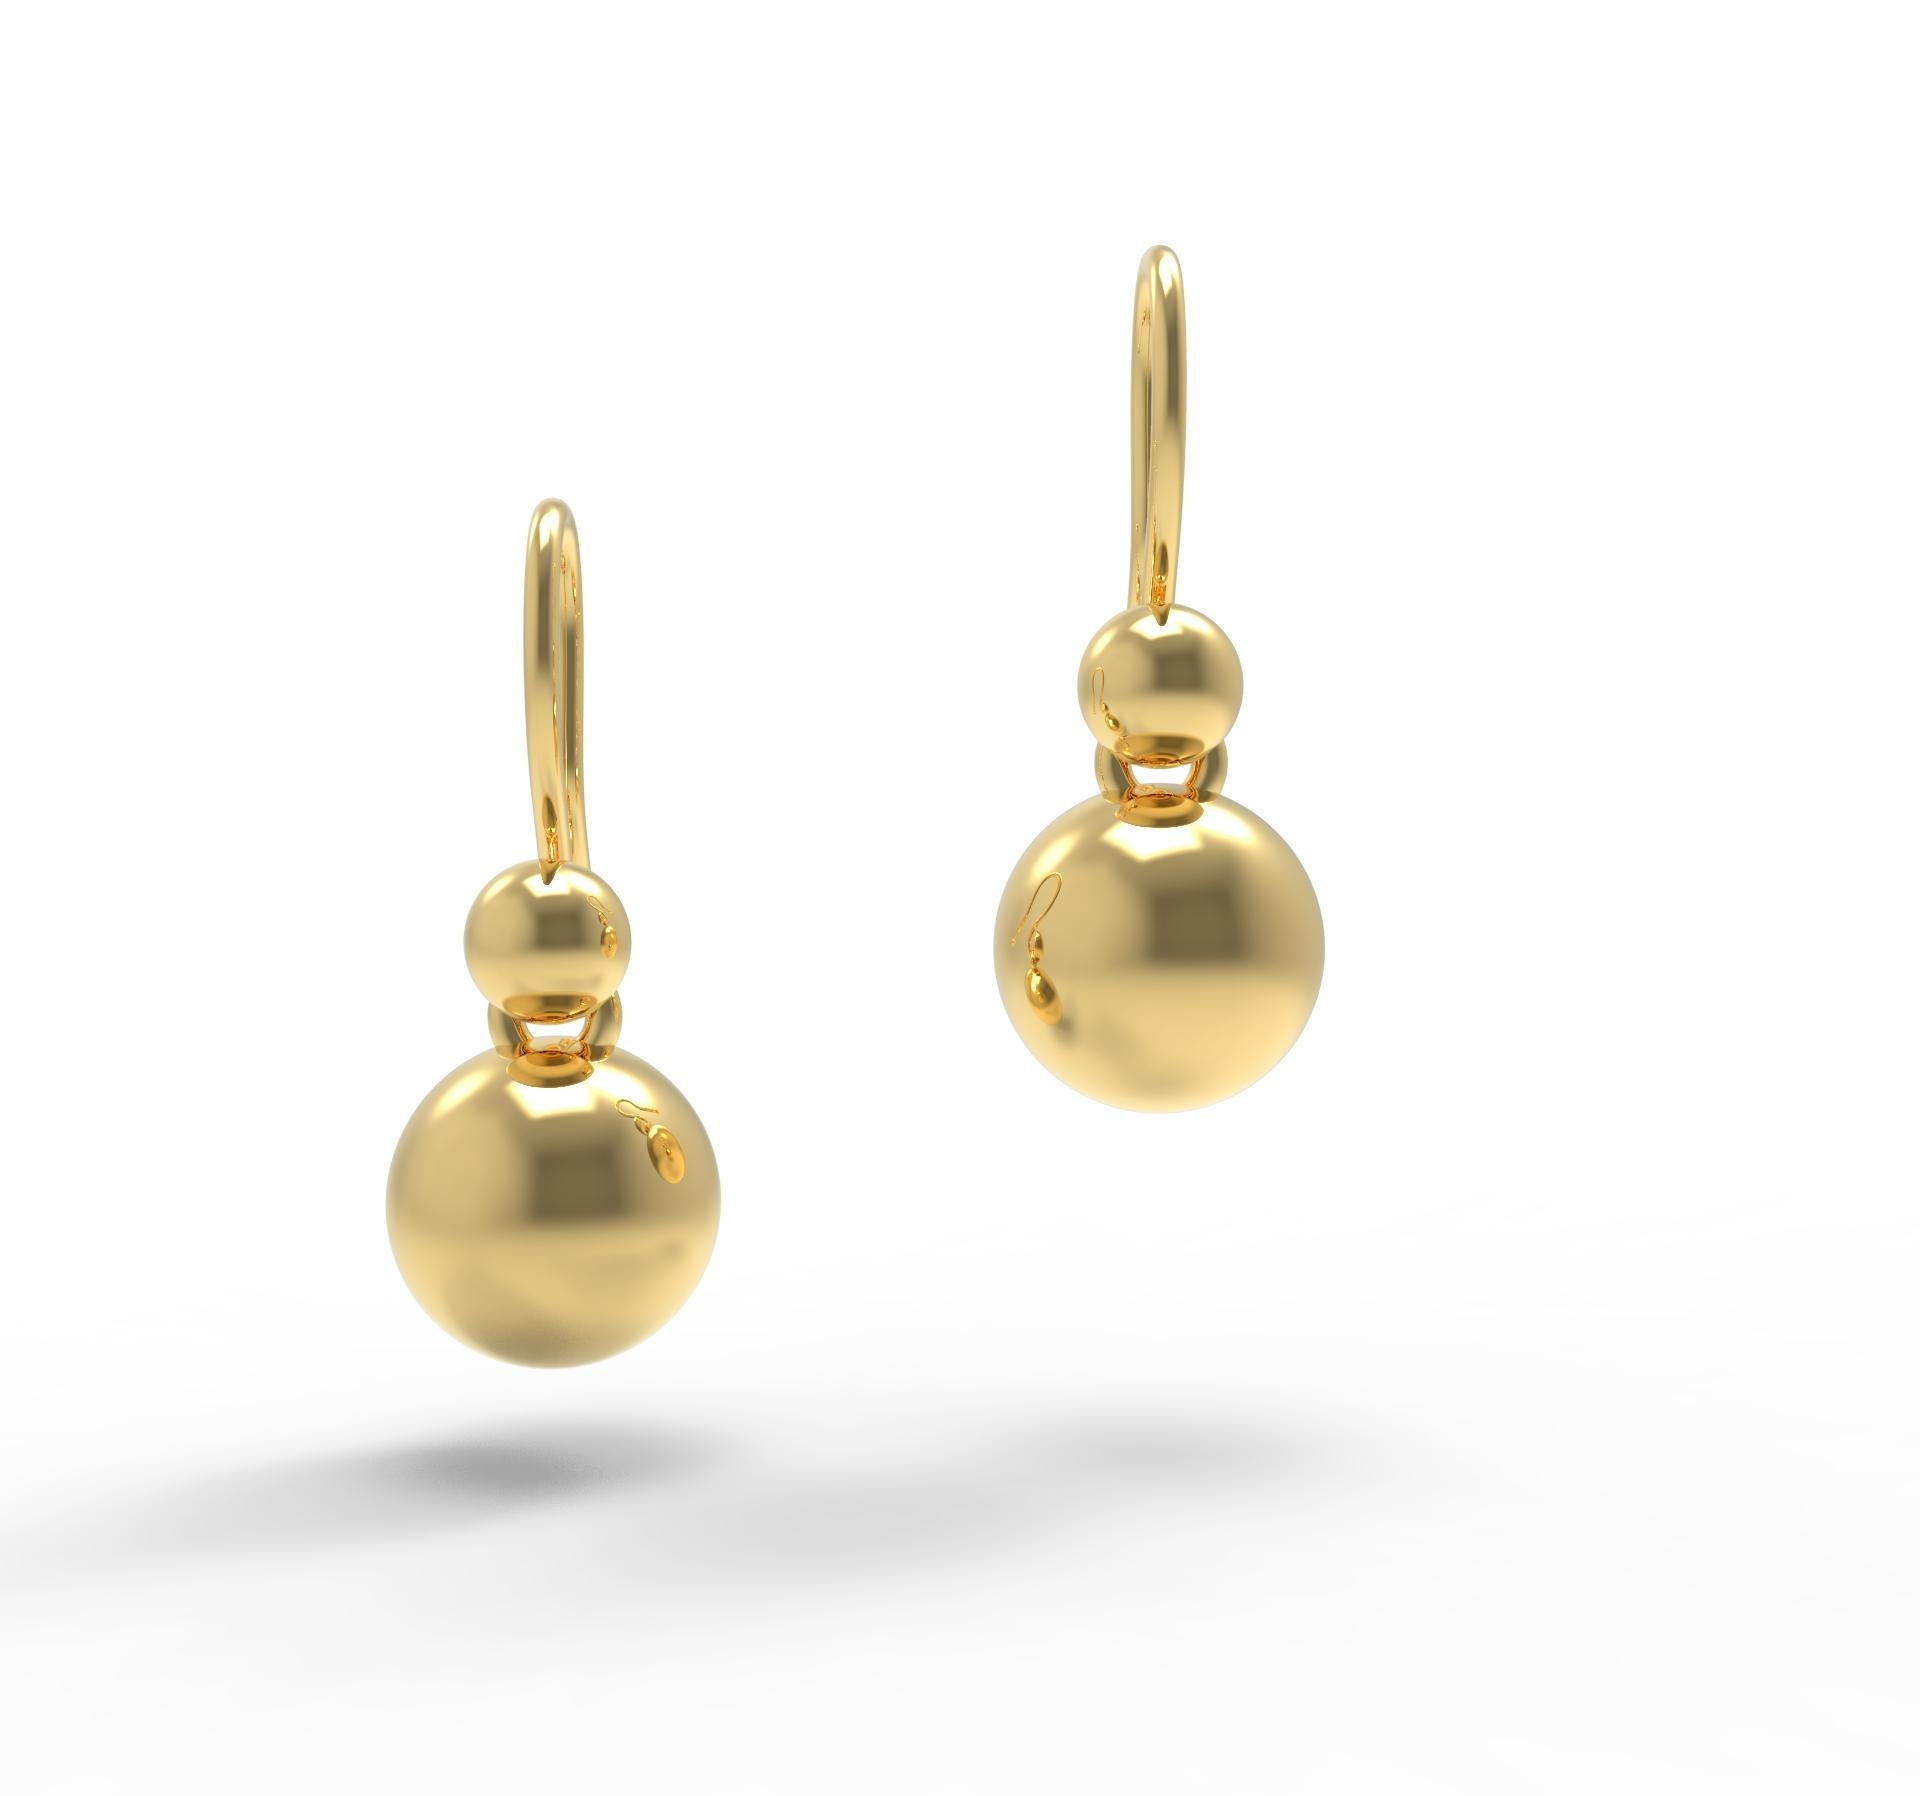 Boucles d'oreilles pendantes en or jaune massif 22K de Romae Jewelry, inspirées d'un ancien design romain. Nos magnifiques boucles d'oreilles 